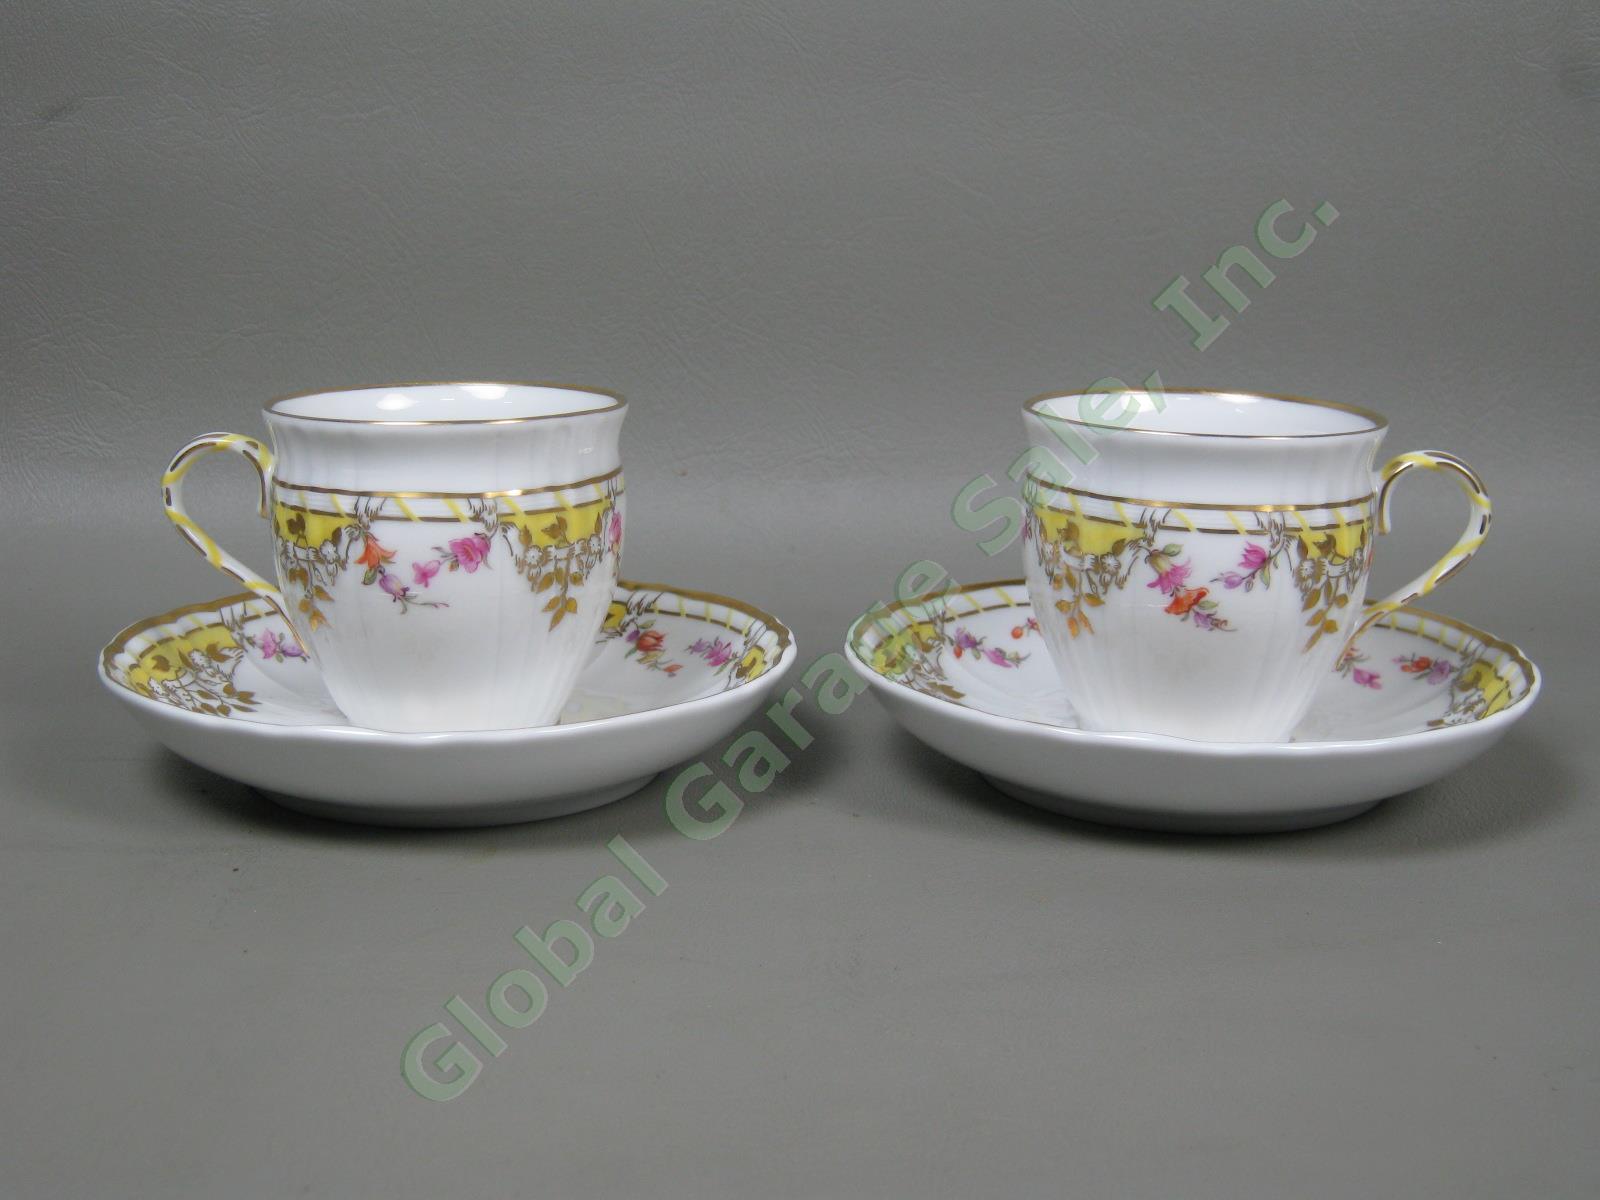 Vtg Antique KPM German Porcelain Dinner Plates Cups & Saucers Set Floral Gilt NR 10